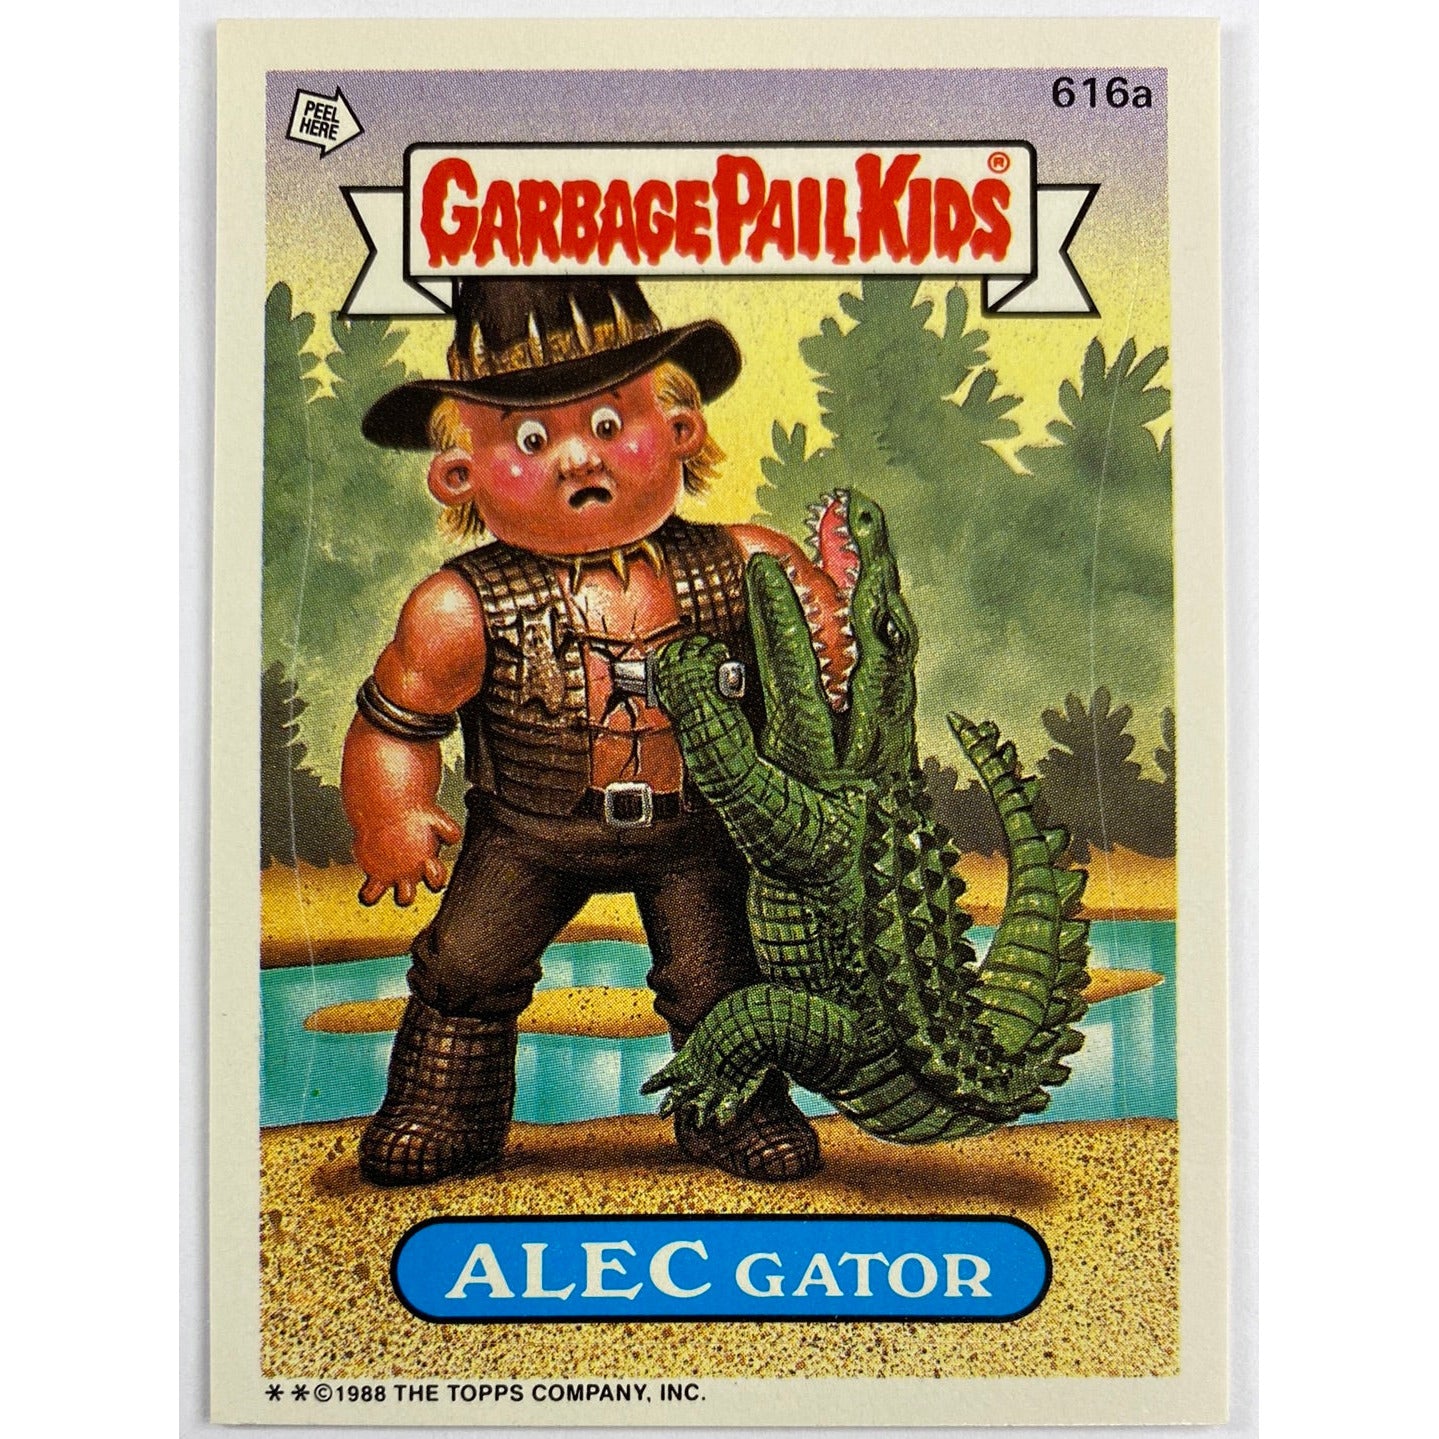 1988 Topps Garbage Pail Kids Alec Gator Die Cut